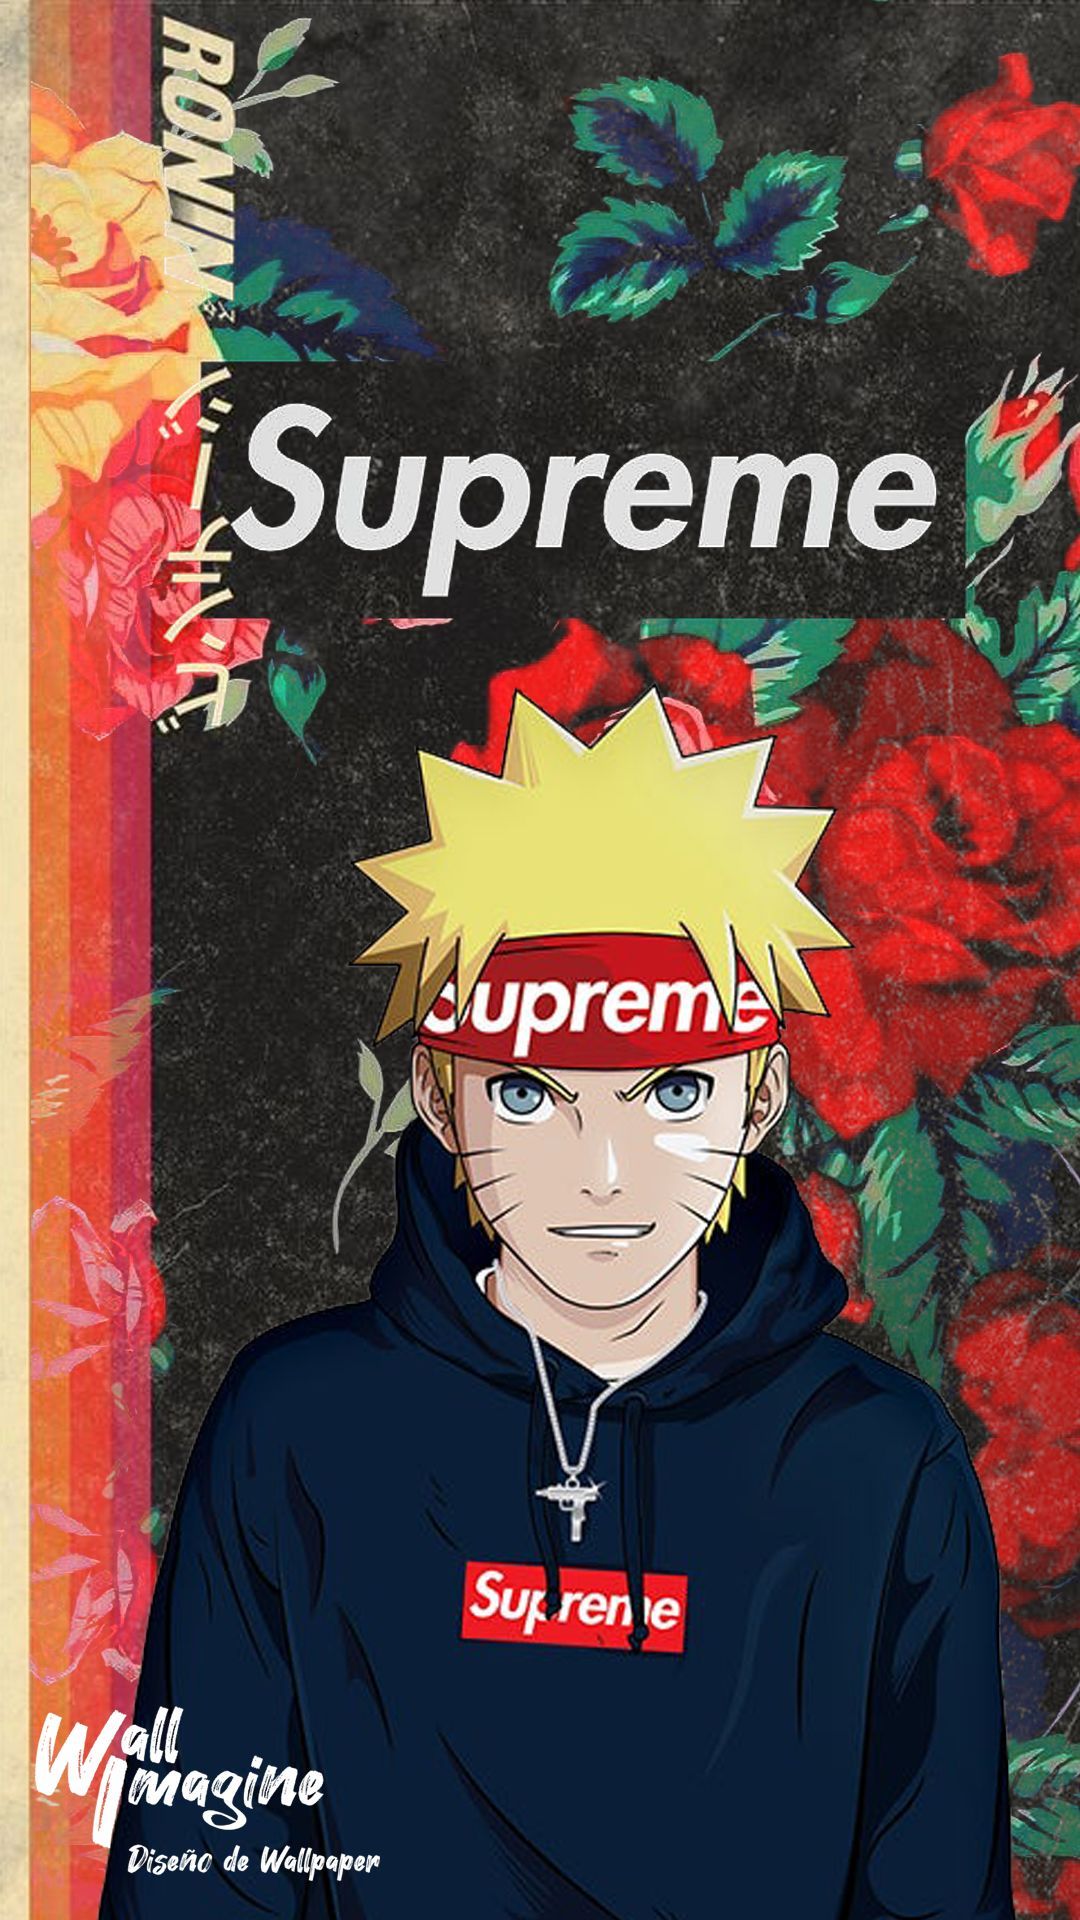 Naruto Supreme. Naruto uzumaki art .com